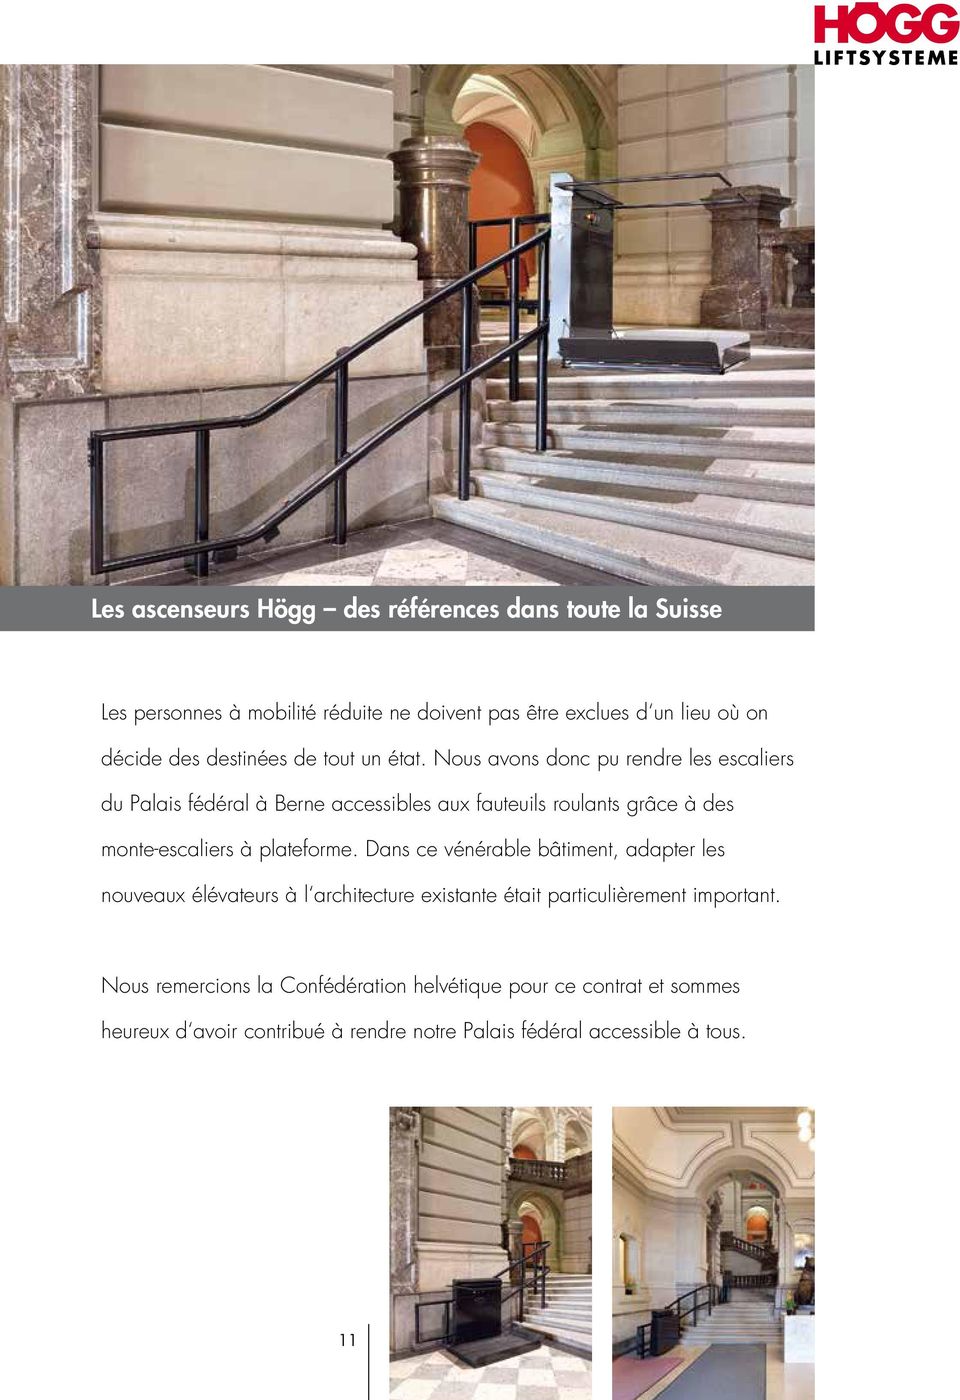 Nous avons donc pu rendre les escaliers du Palais fédéral à Berne accessibles aux fauteuils roulants grâce à des monte-escaliers à plateforme.